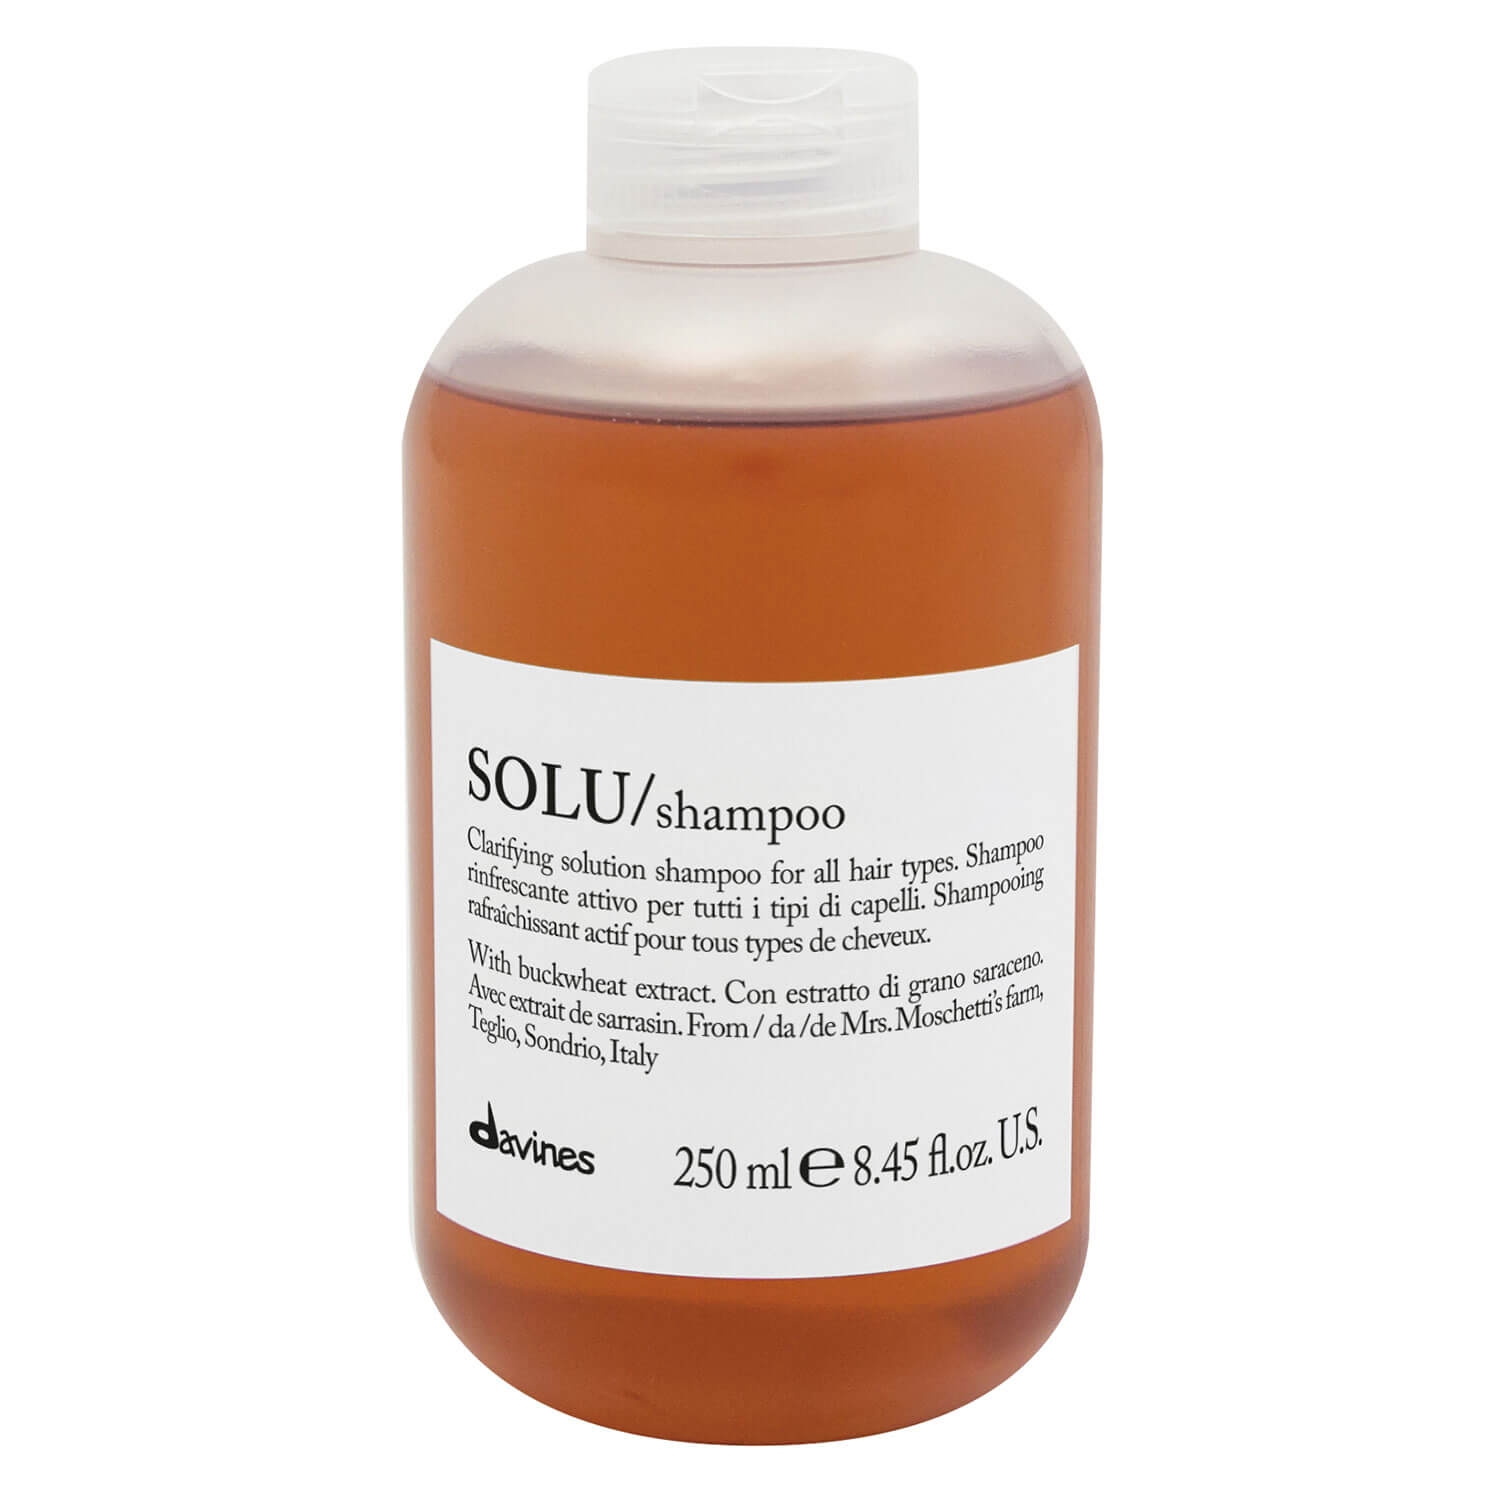 Produktbild von Essential Haircare - SOLU Shampoo